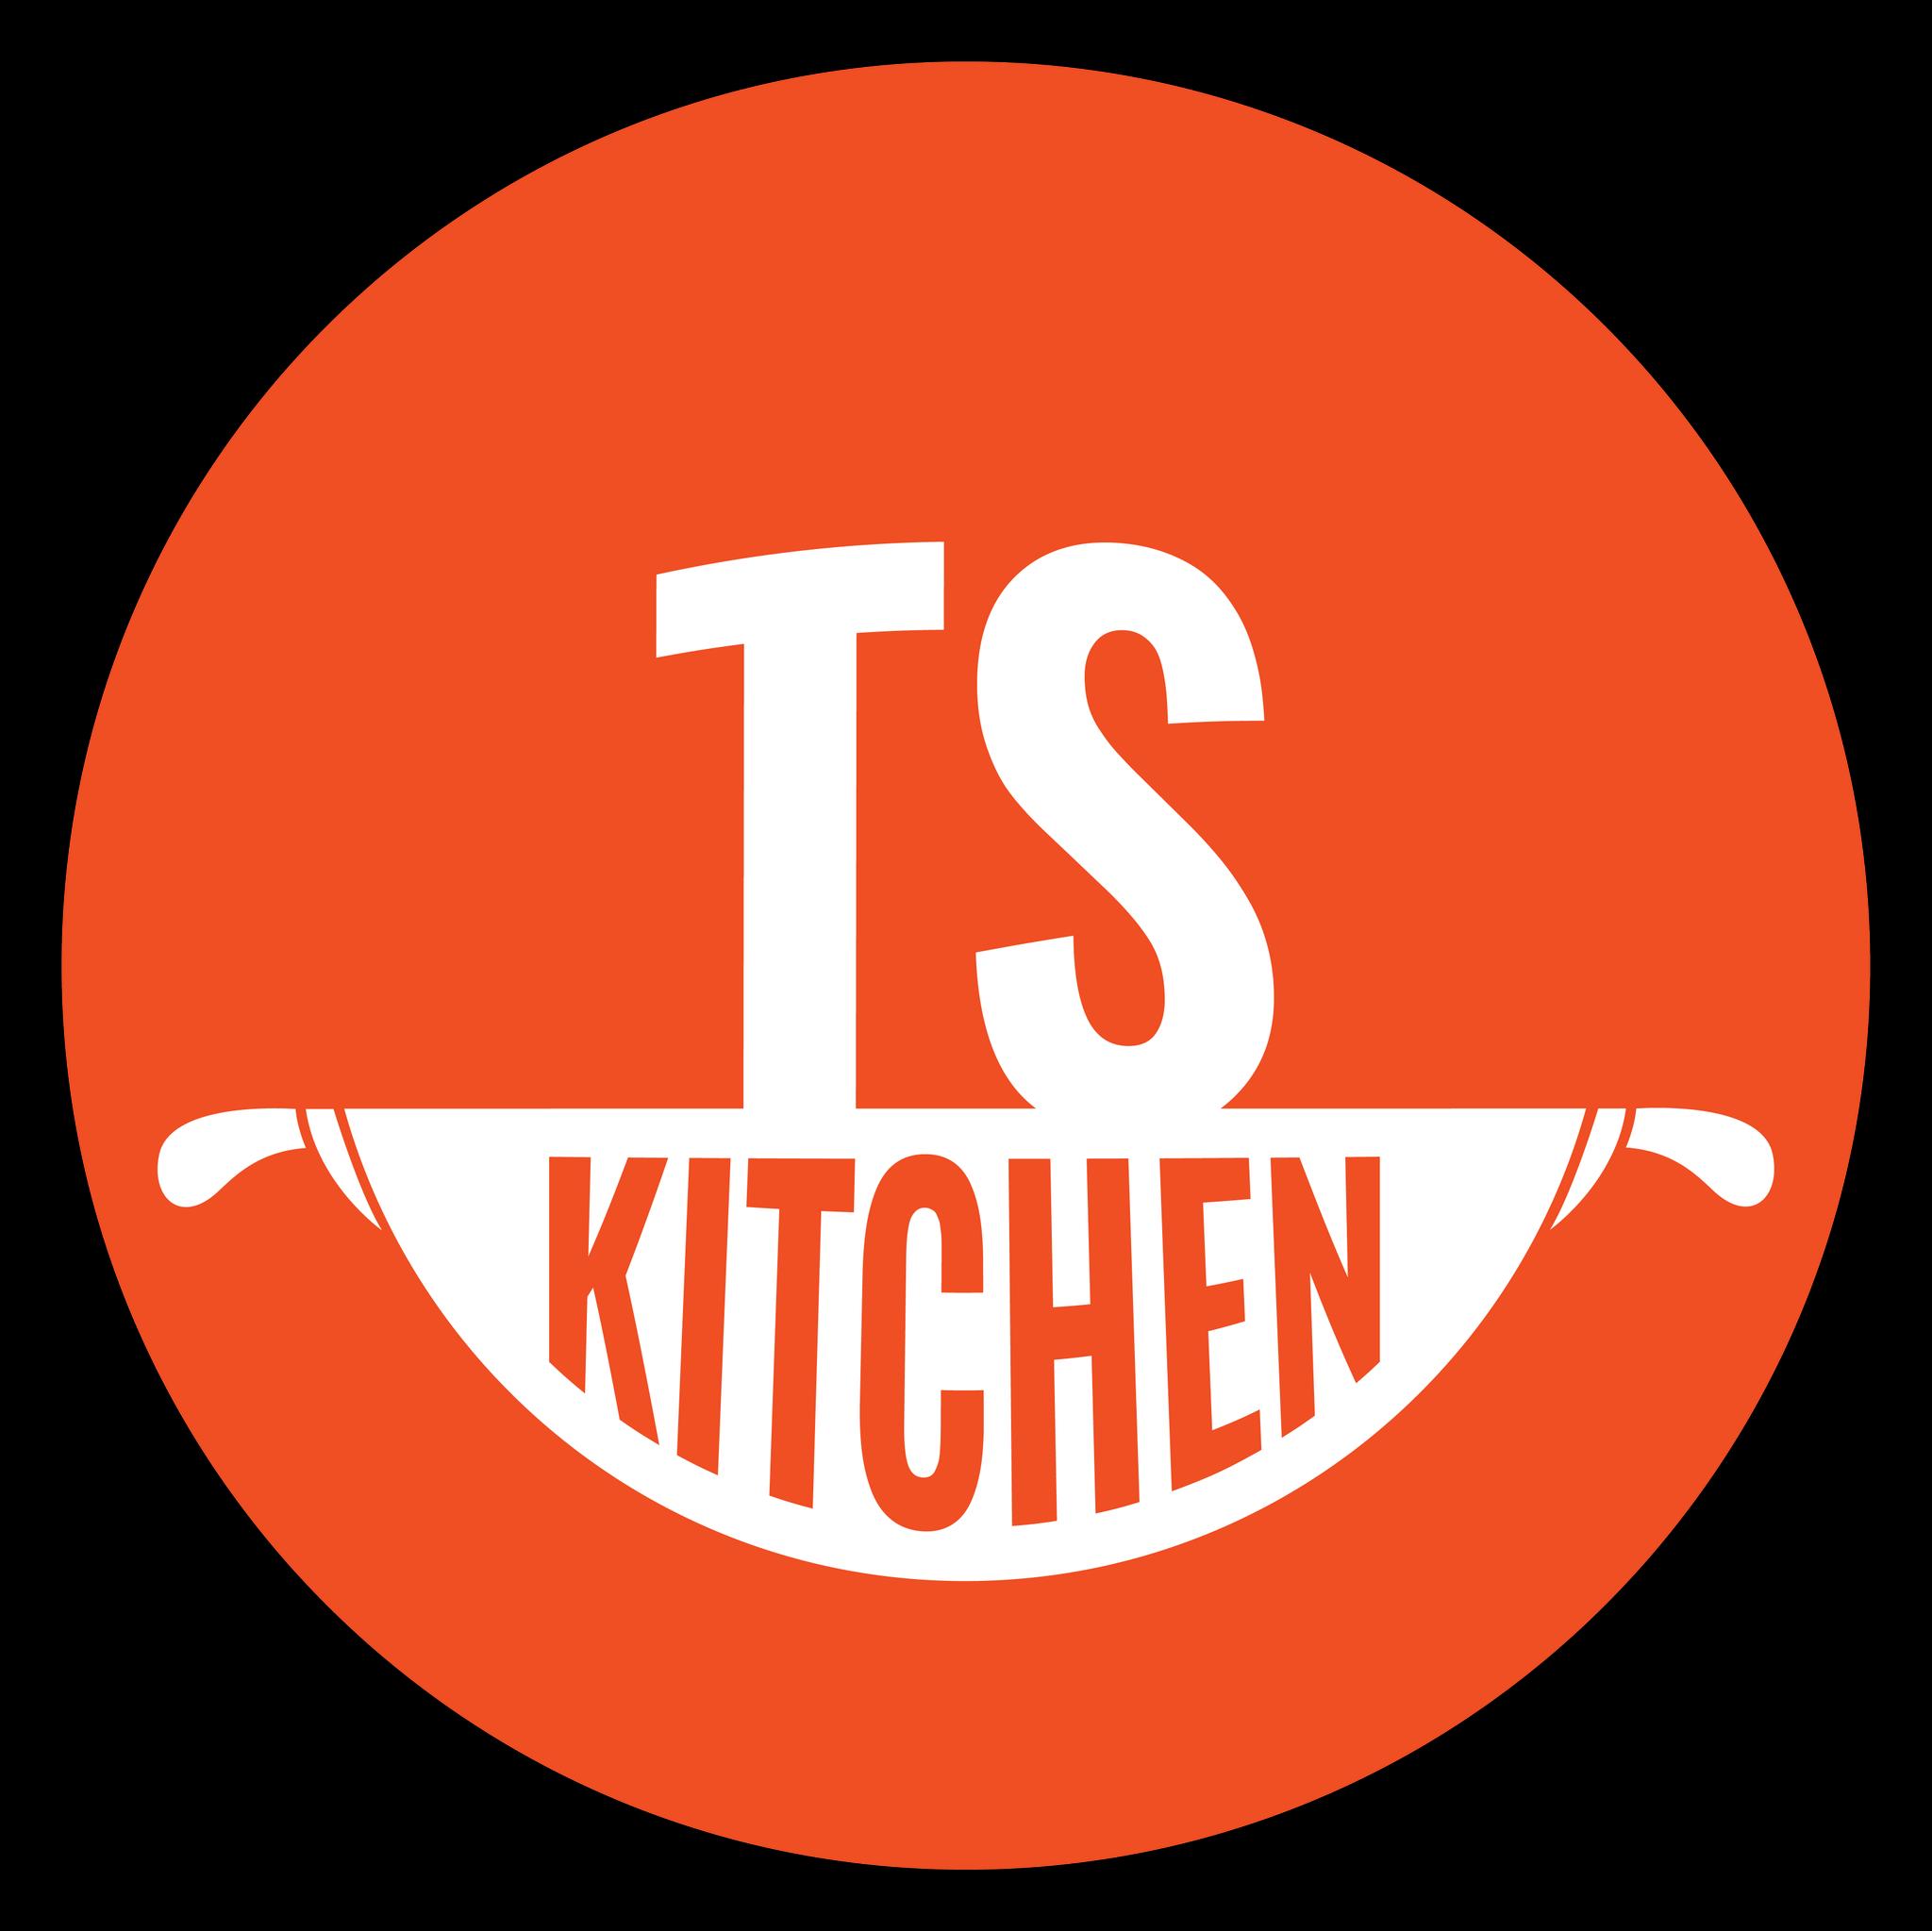 TS Kitchen	